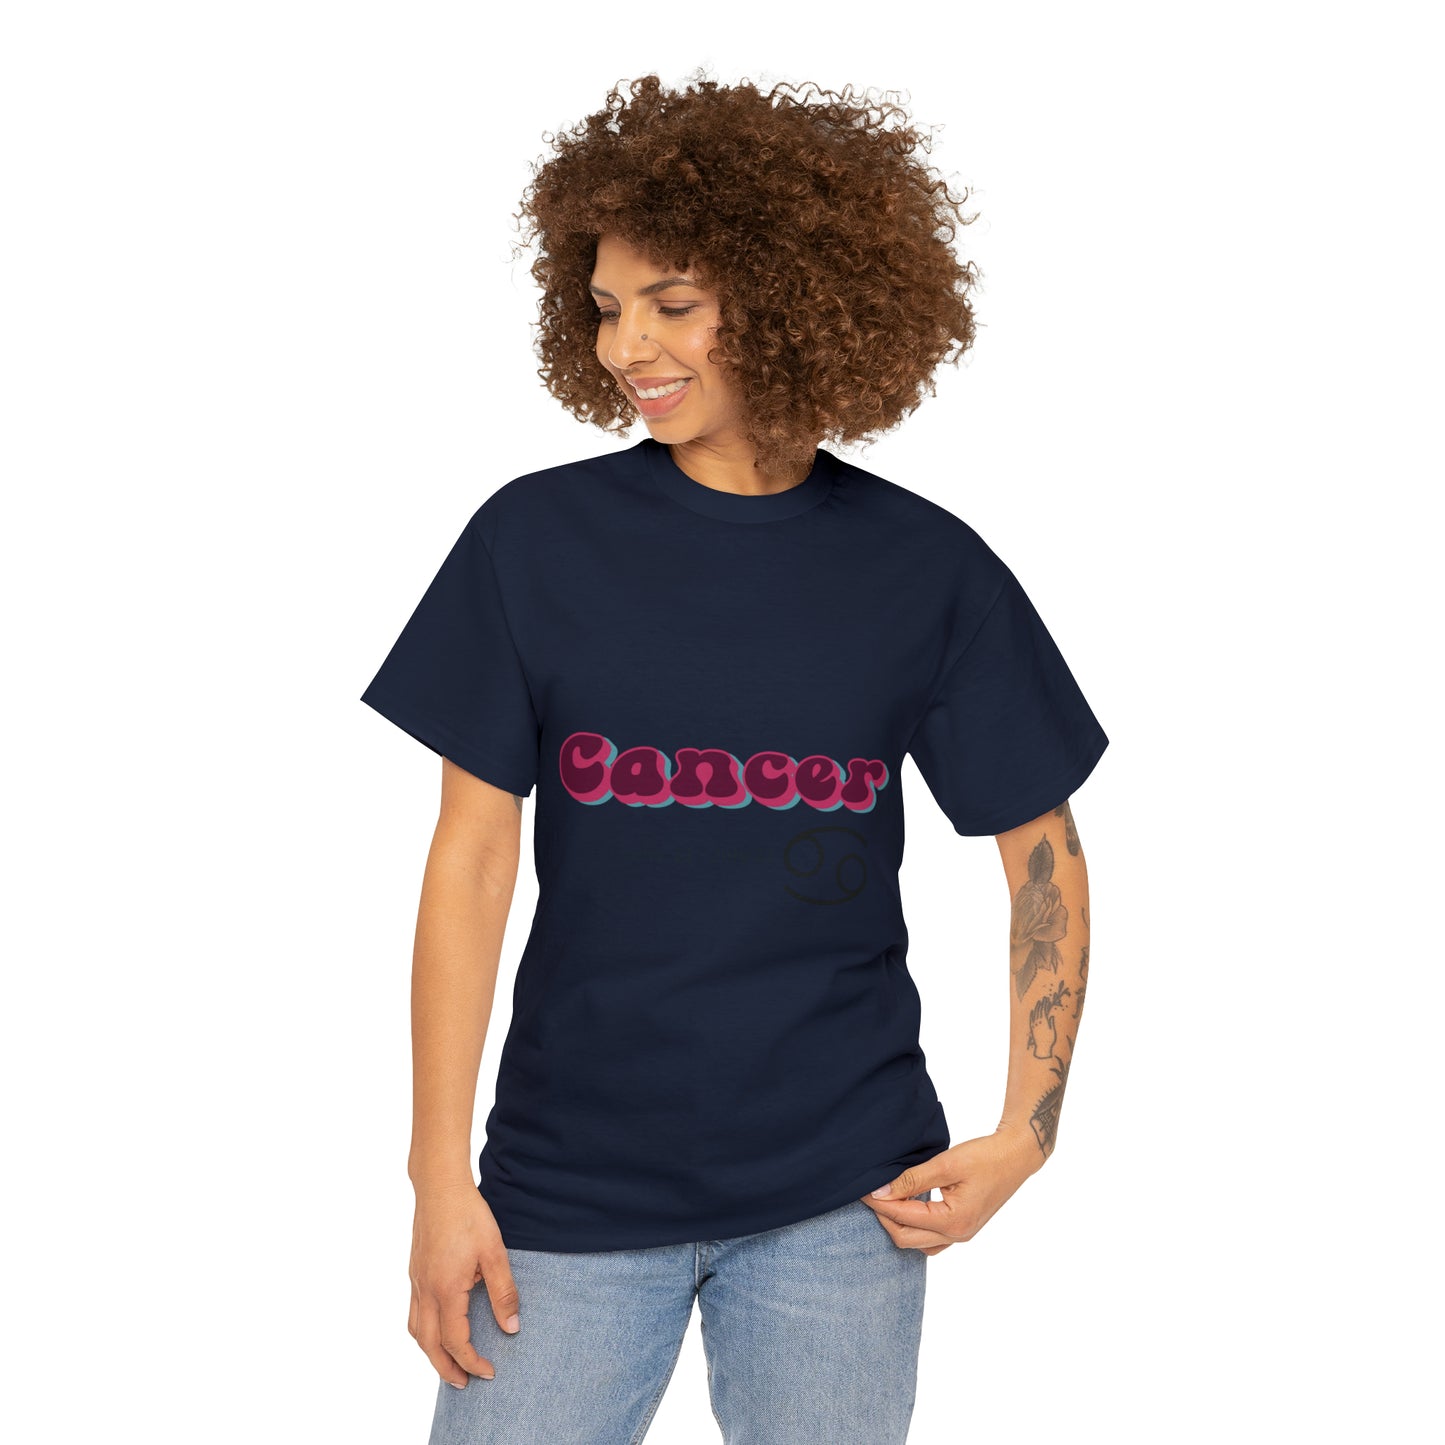 Cancer T-shirt